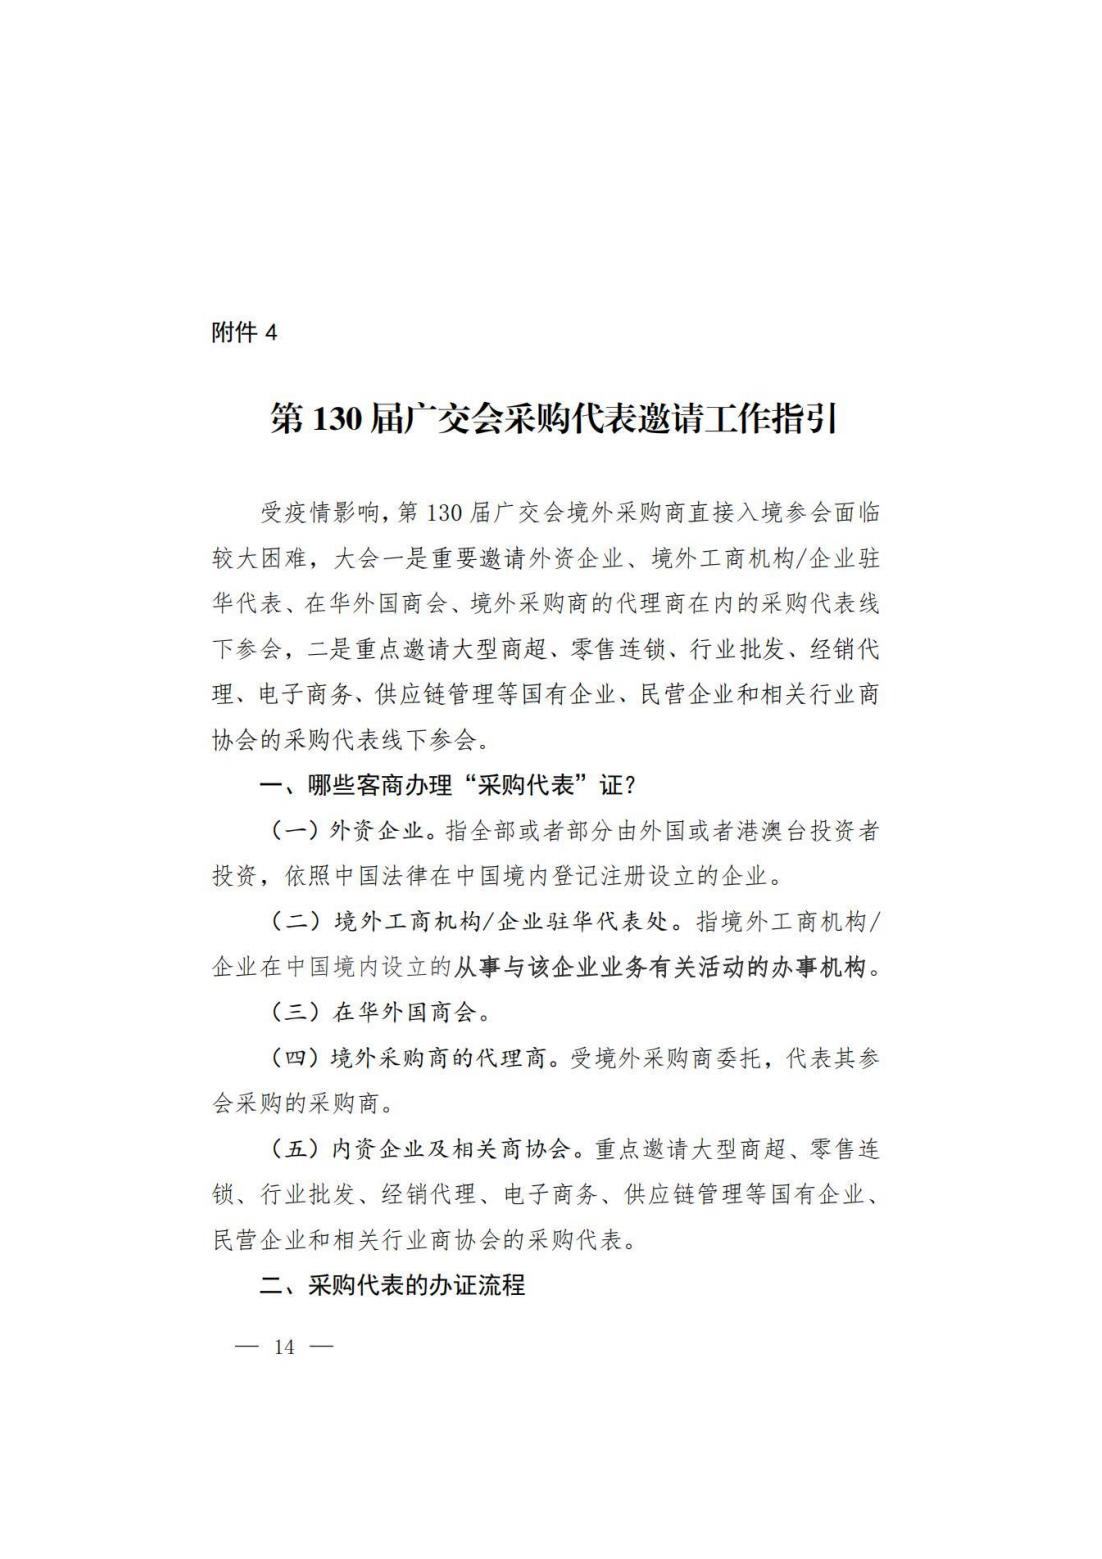 关于转发商务厅《第 130 届中国进出口商品交易会山西省交易团采购商组织实施方案》的通知(图15)